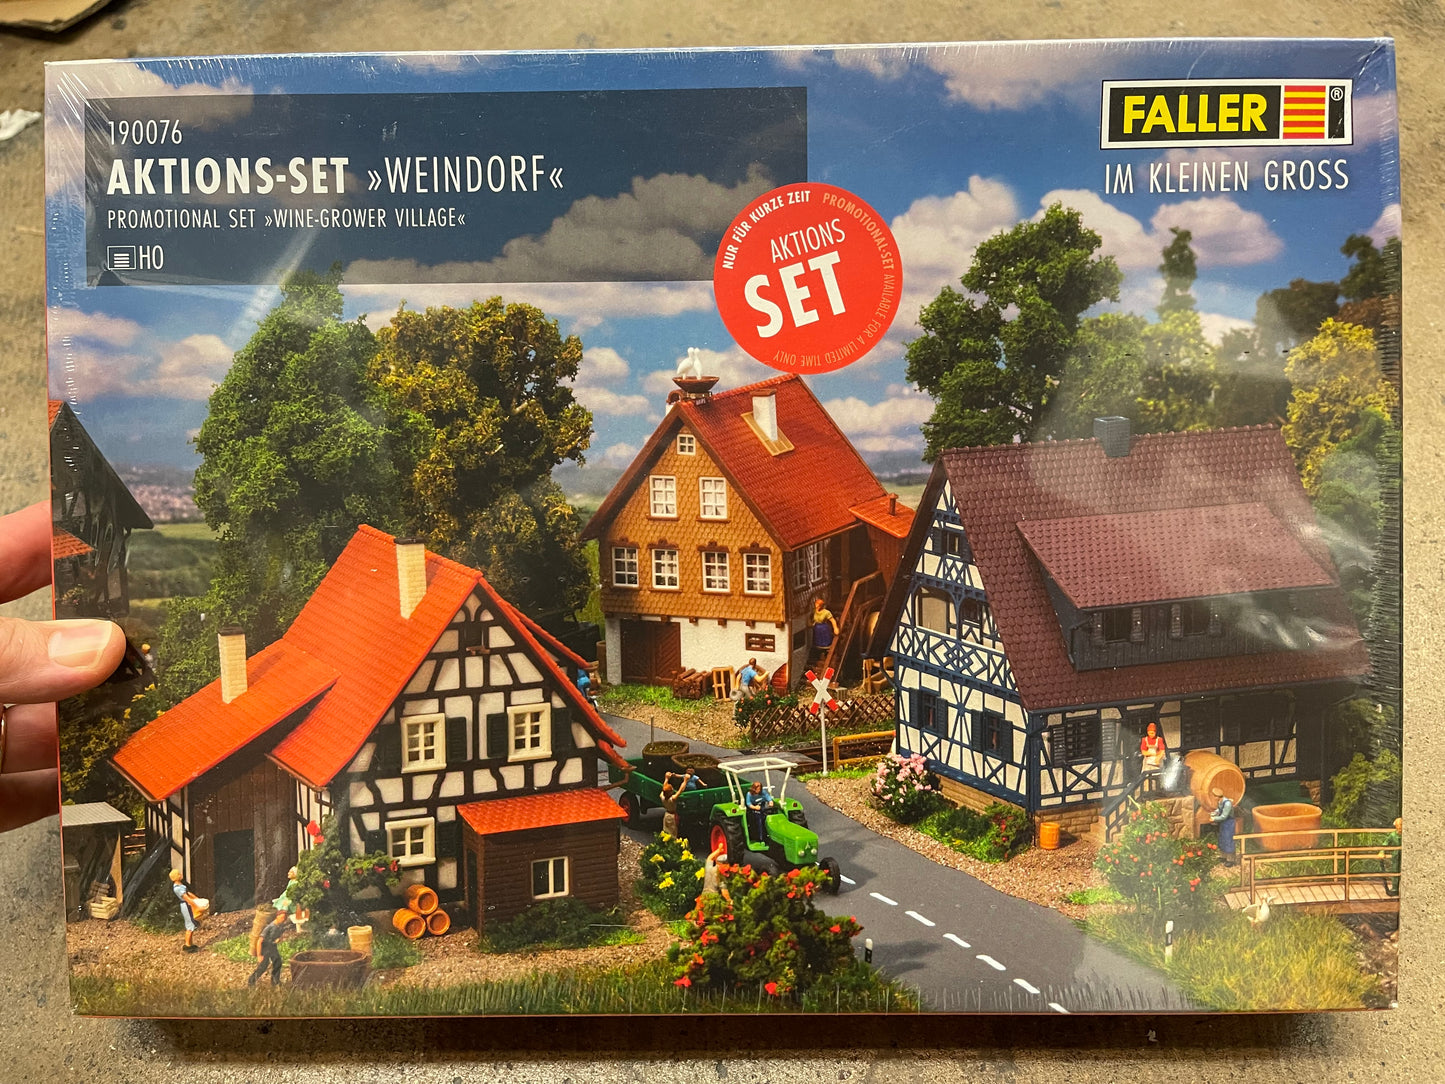 Faller 190076 - Promotional Set Wine-grower village